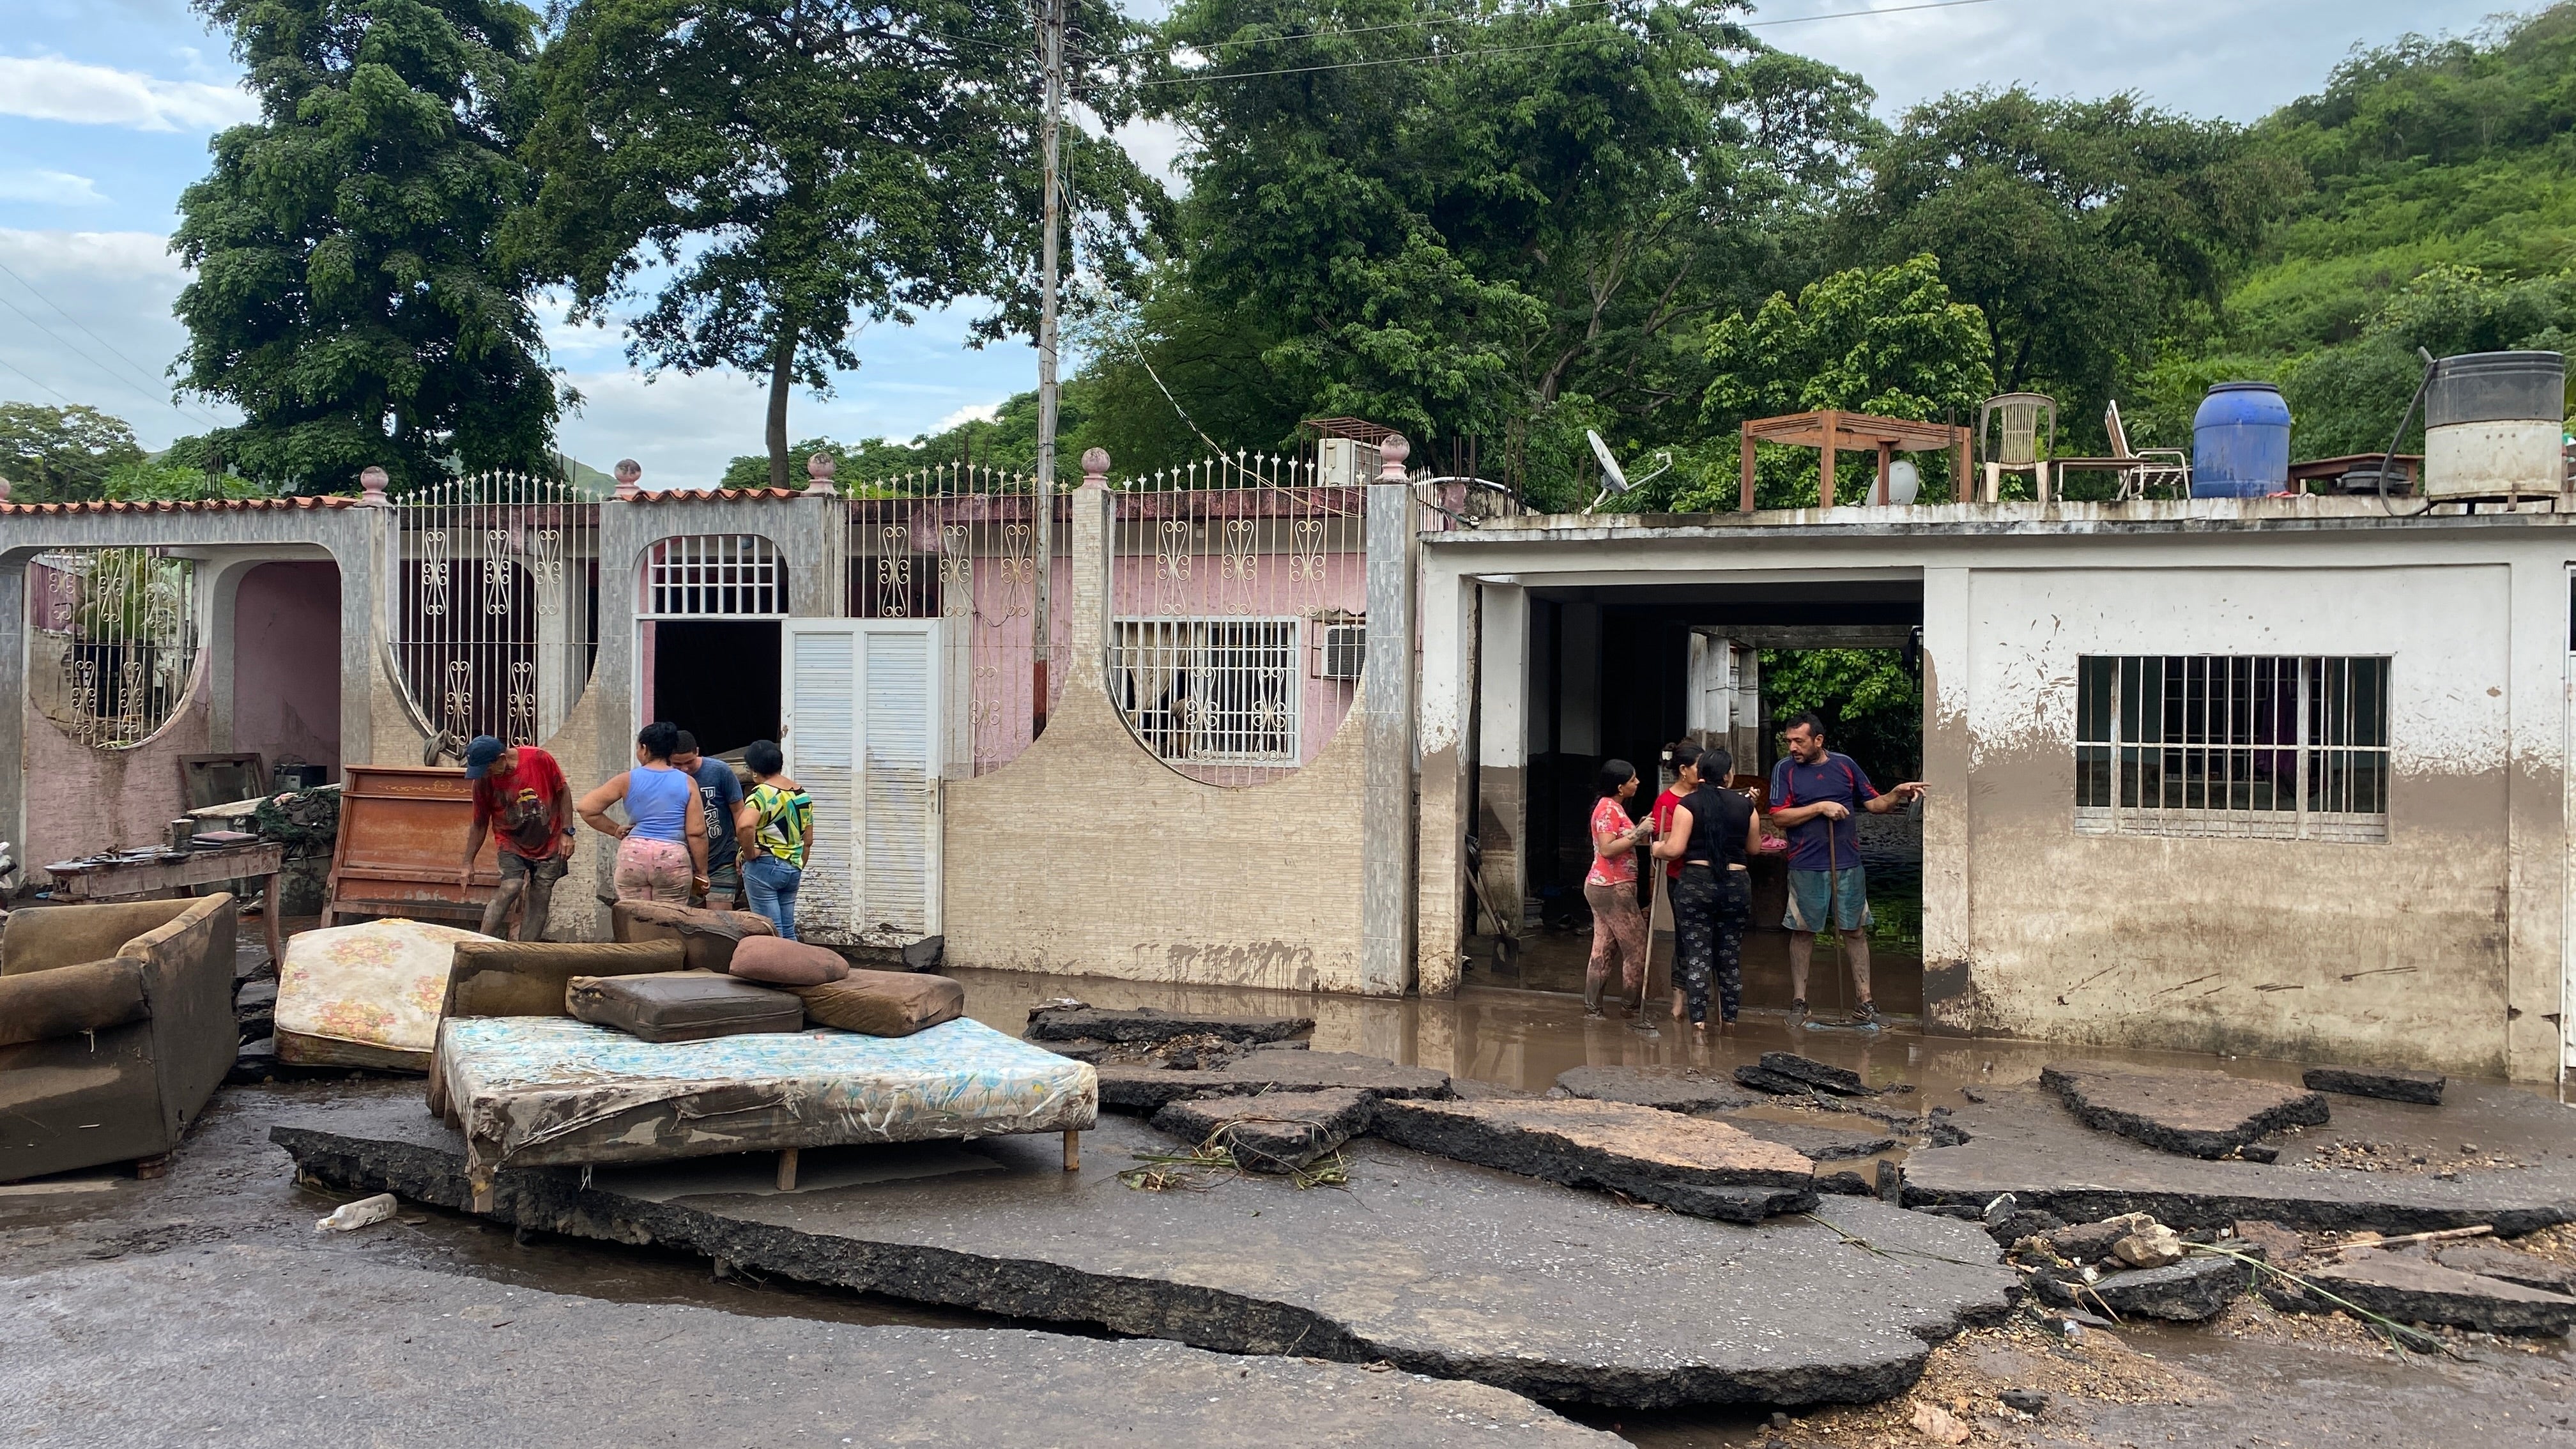 يحاول السكان استعادة ممتلكاتهم من منازلهم التي غمرتها المياه بعد أن فاض نهر بسبب الأمطار الغزيرة عقب مرور إعصار بريل على الطريق من ميكومينا إلى كوماناكوا، ولاية سوكري، فنزويلا